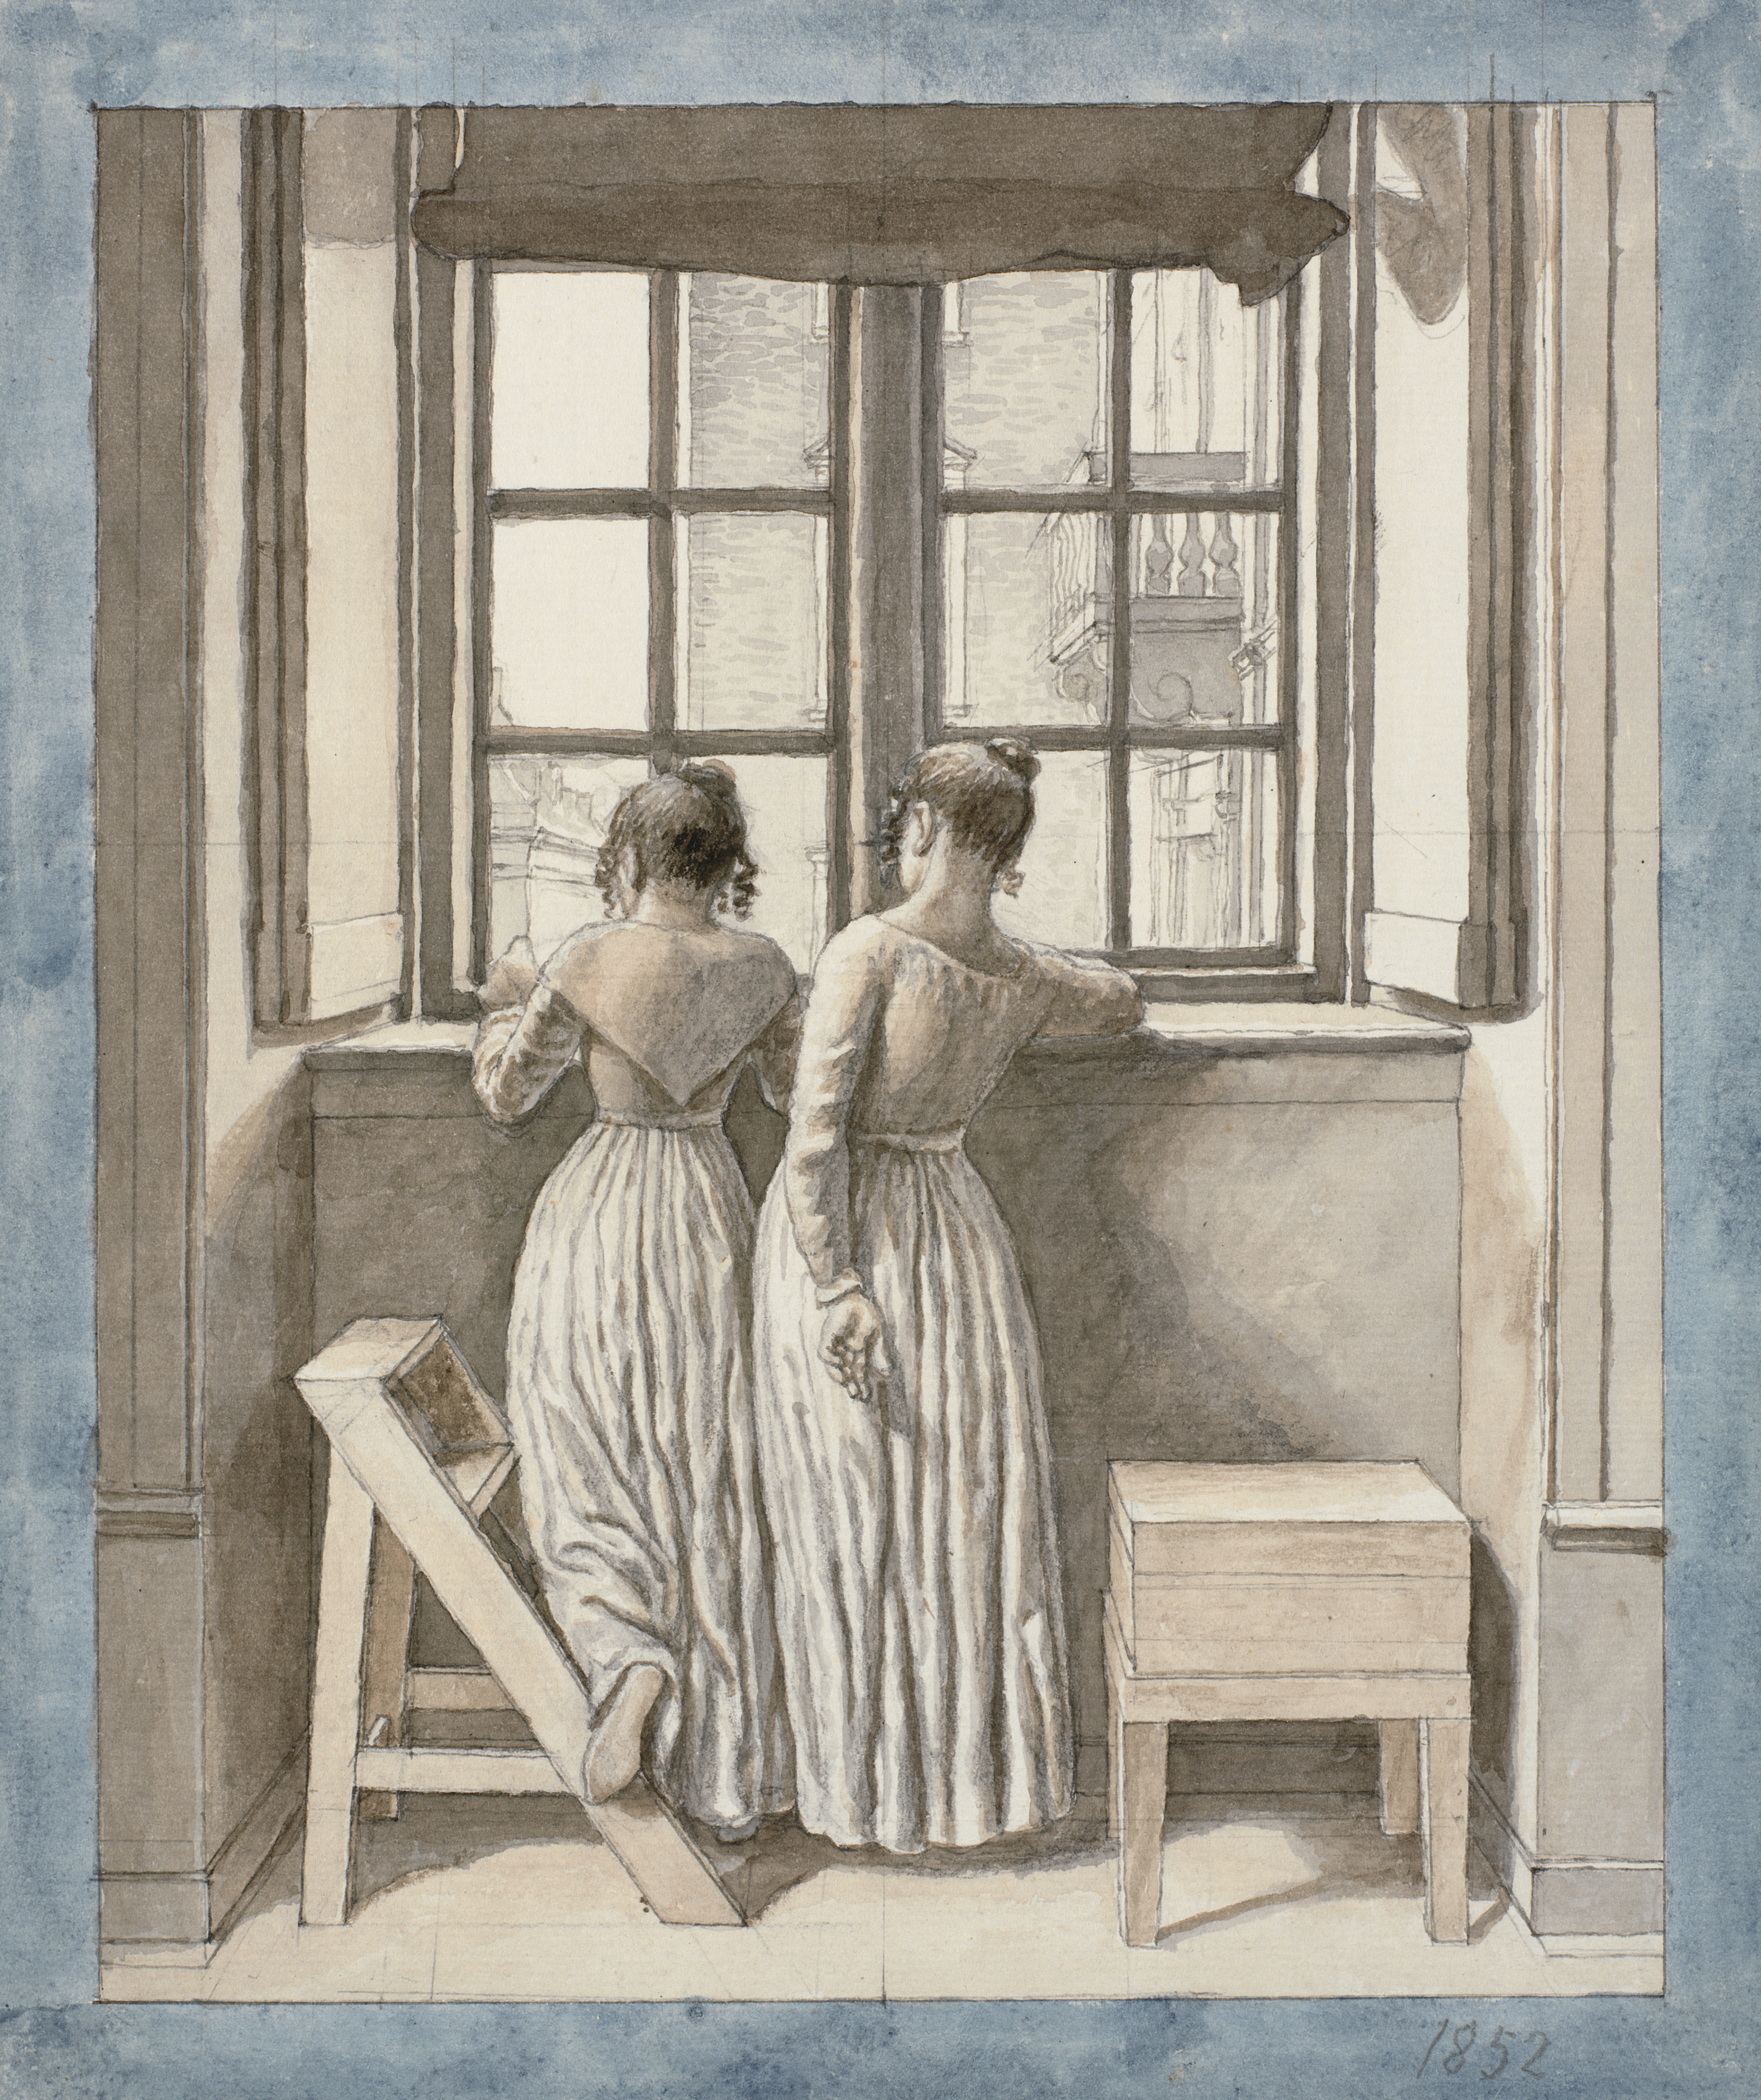 एट ए विंडो इन द आर्टिस्ट्स स्टूडियो by C.W. Eckersberg - १८५२ - २७४ x २३१ मी.मी. 